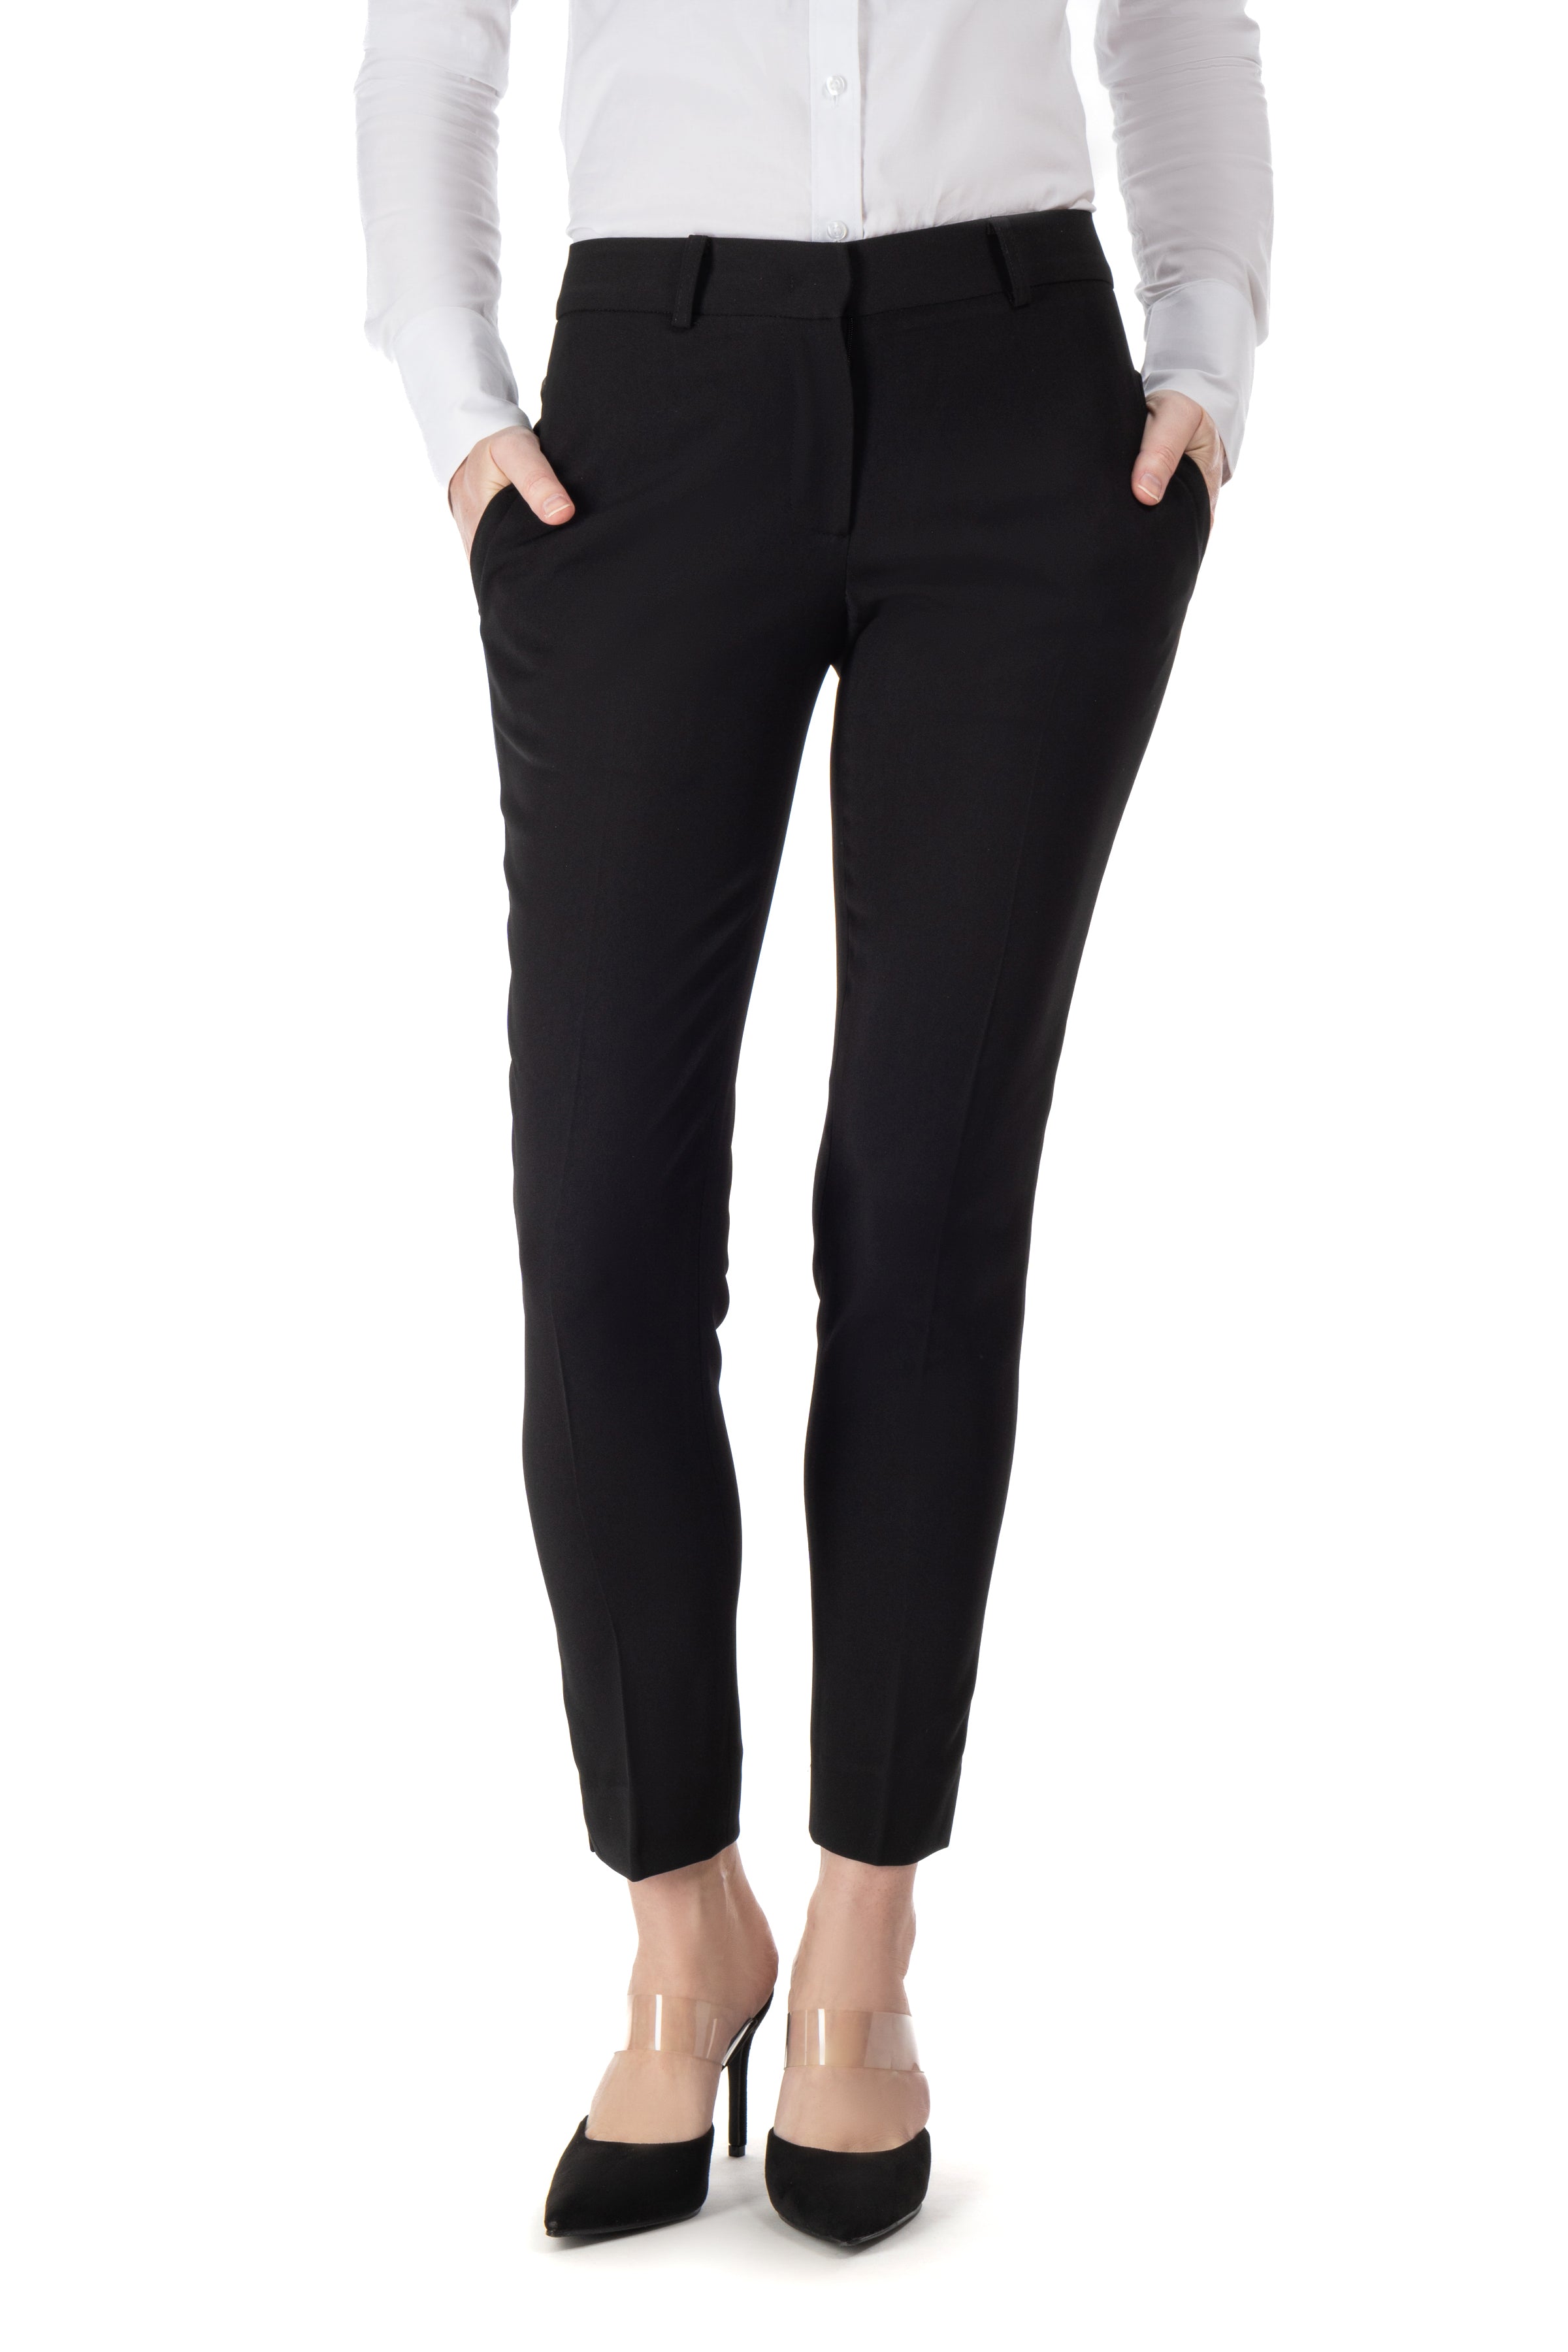  Women's Slim Fit Solid Color Suit Pants Black Straight